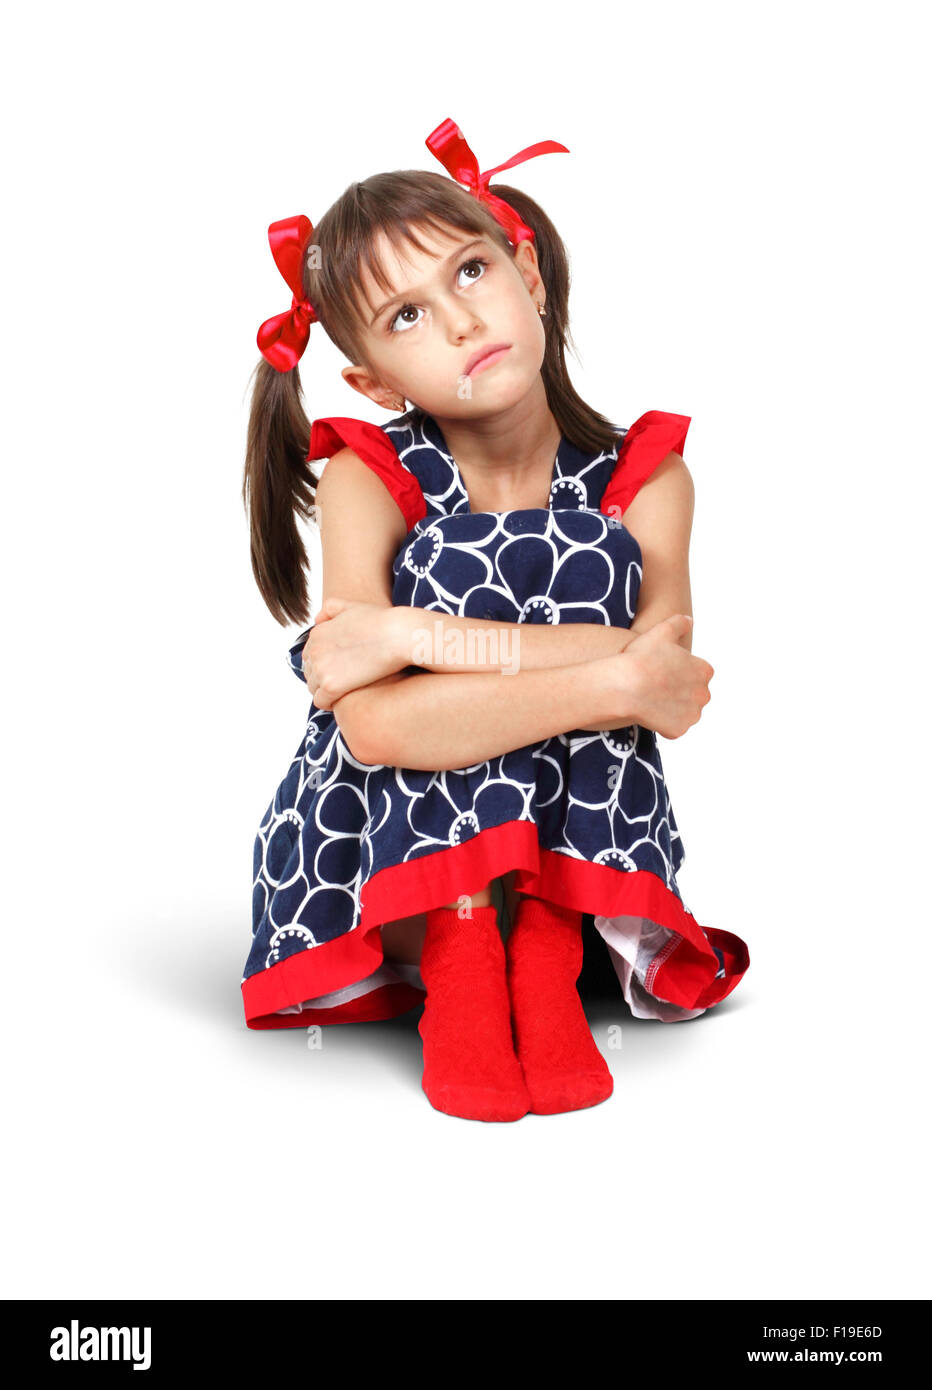 Sitzt traurig, nachdenklich Kind Mädchen mit roten Schleifen auf weiß Stockfoto